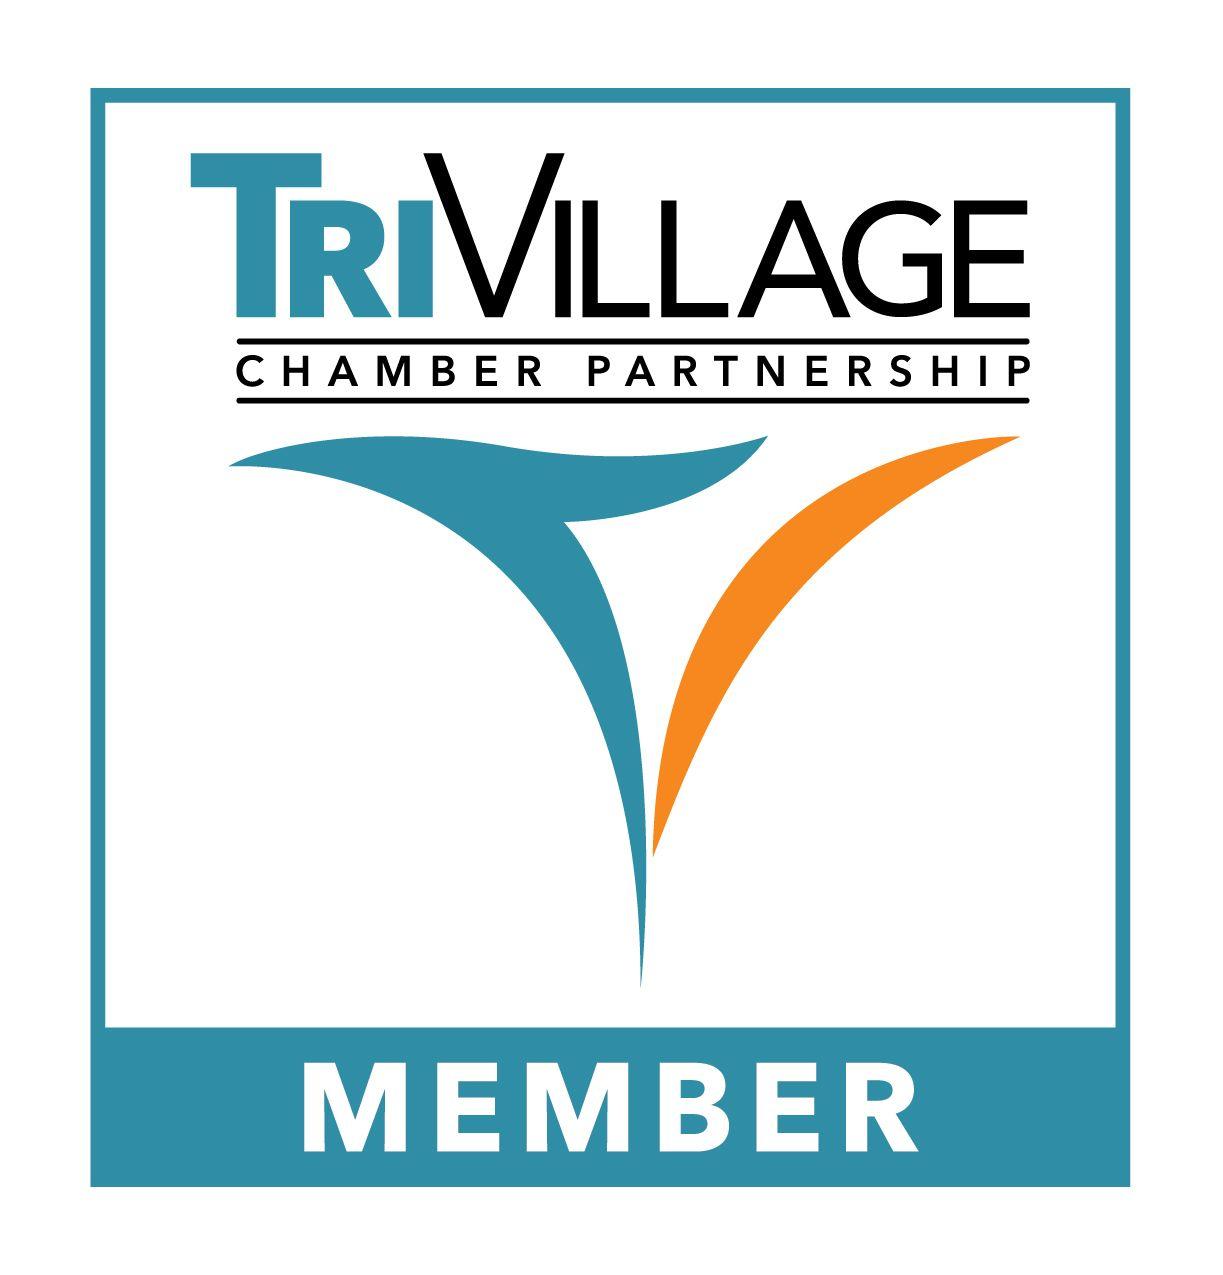 Agreement Logo - Logo Usage. Tri Village Chamber Partnership